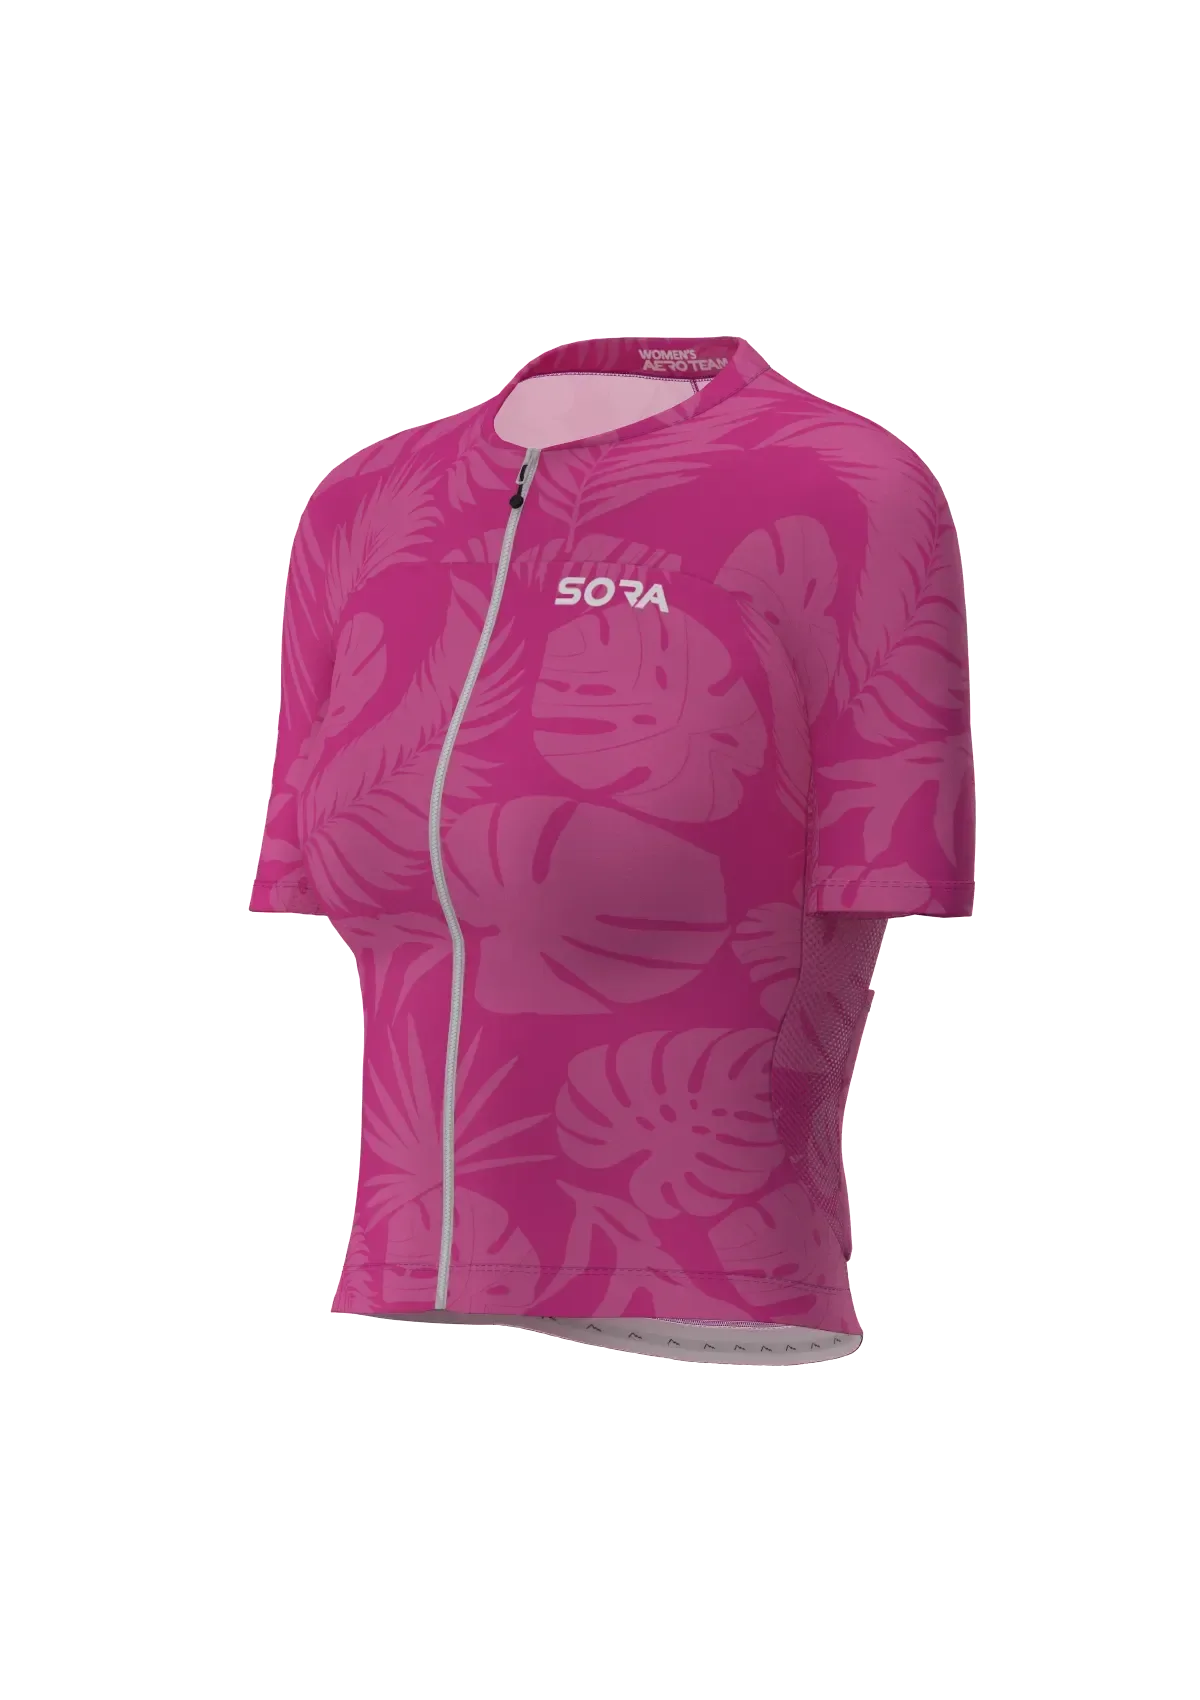 Aero Team Damen Fahrrad Trikot Pink